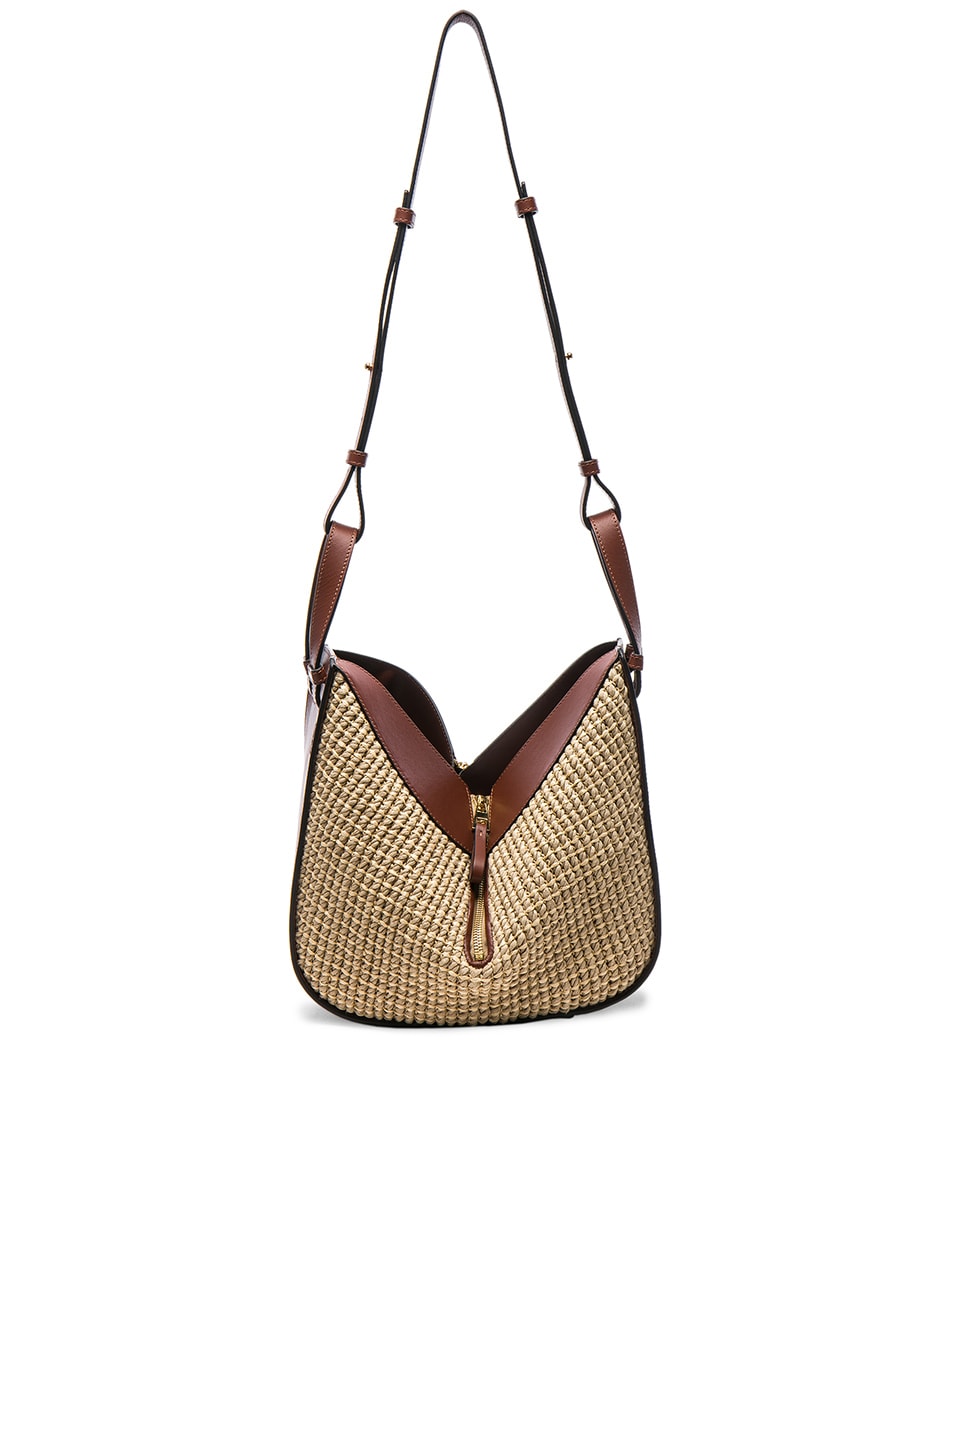 Loewe Hammock Raffia Small Bag in Natural & Tan | FWRD